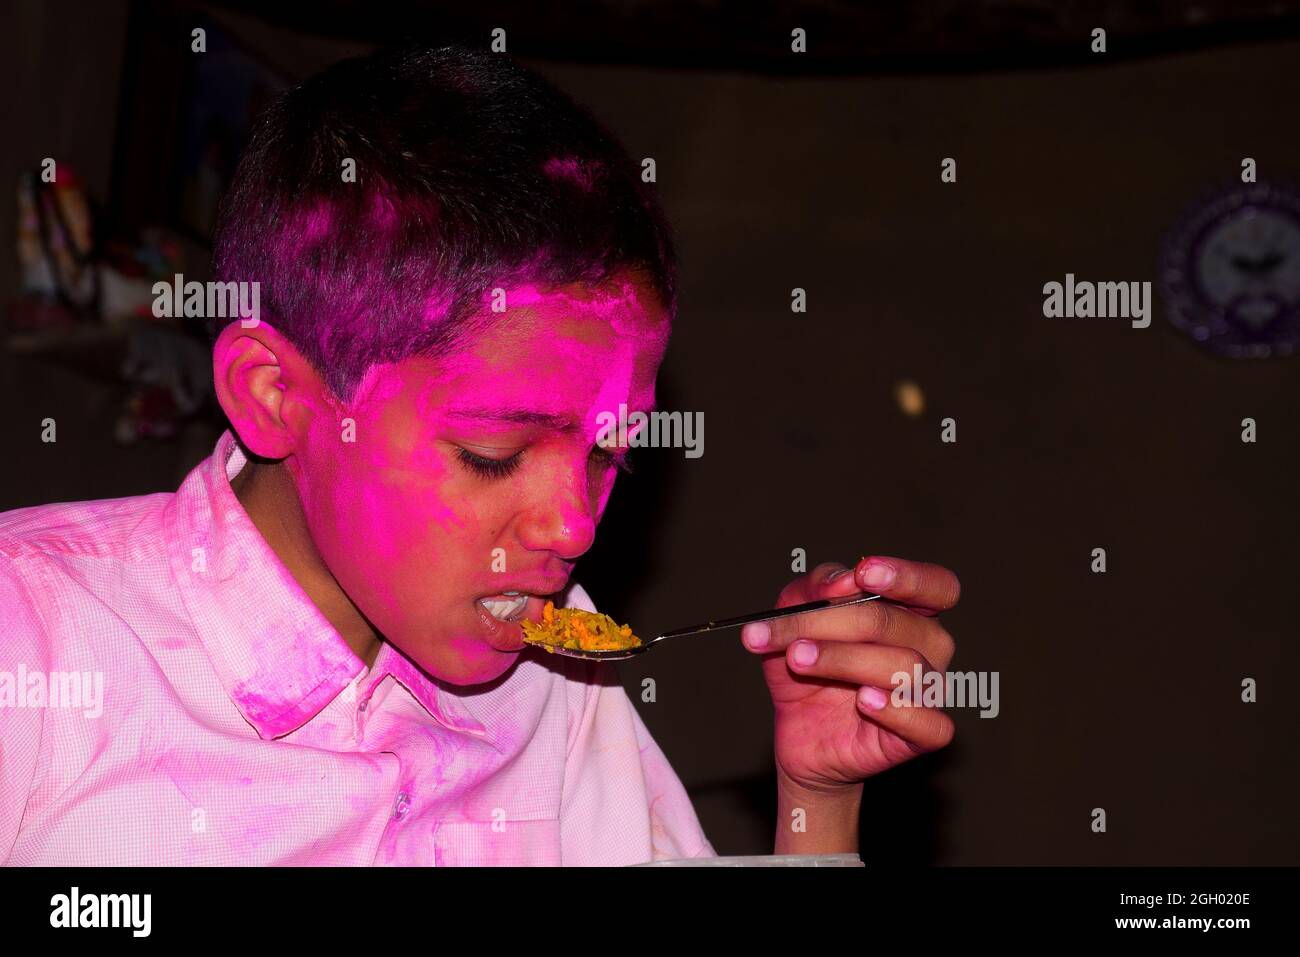 Junge mit buntem Gesicht beim Frühstück. Konzept für das indische Festival Holi Stockfoto